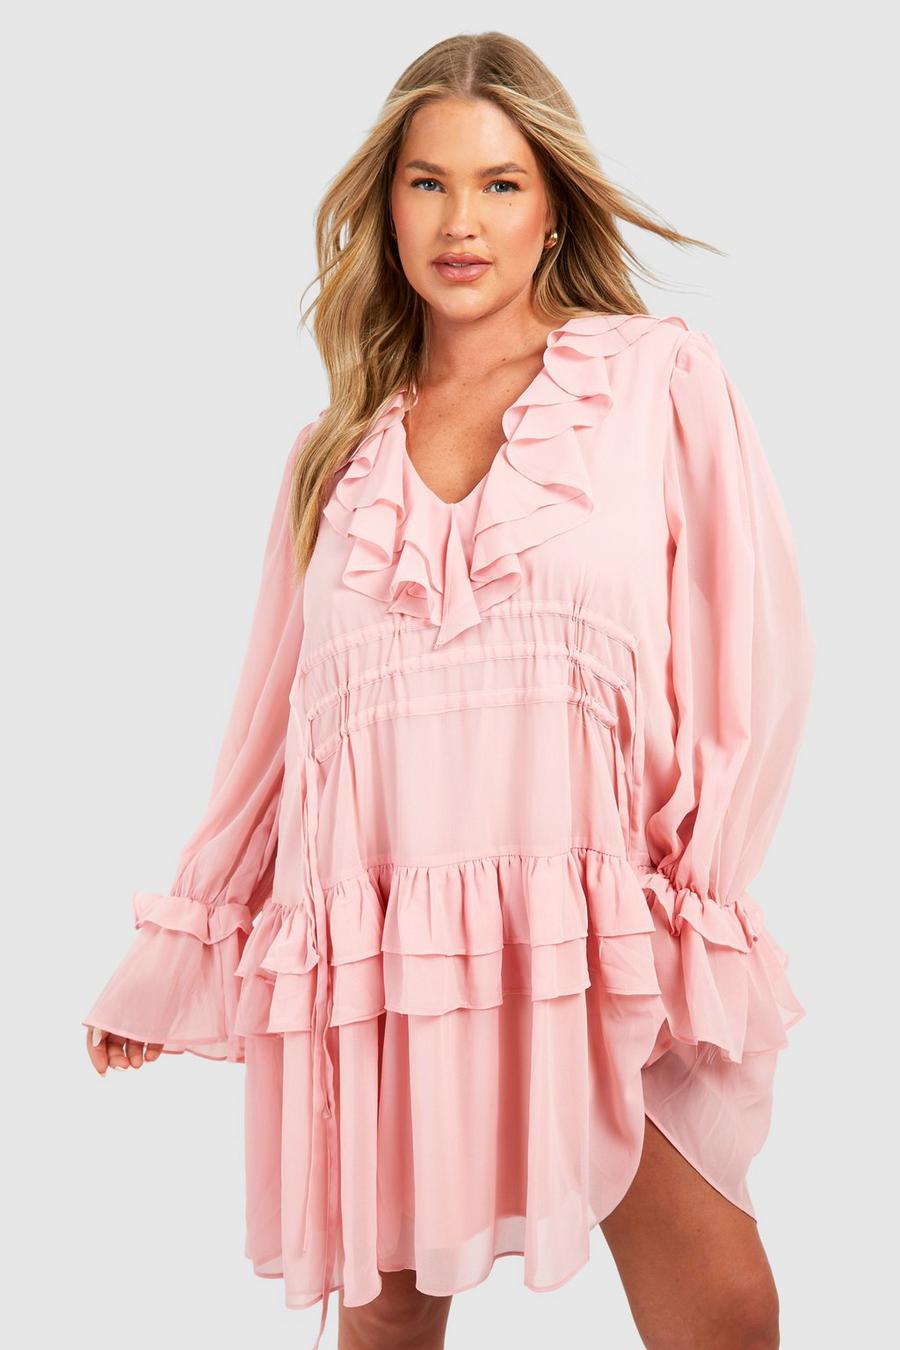 Blush pink Plus Chiffon Ruffle Layer Skater Dress